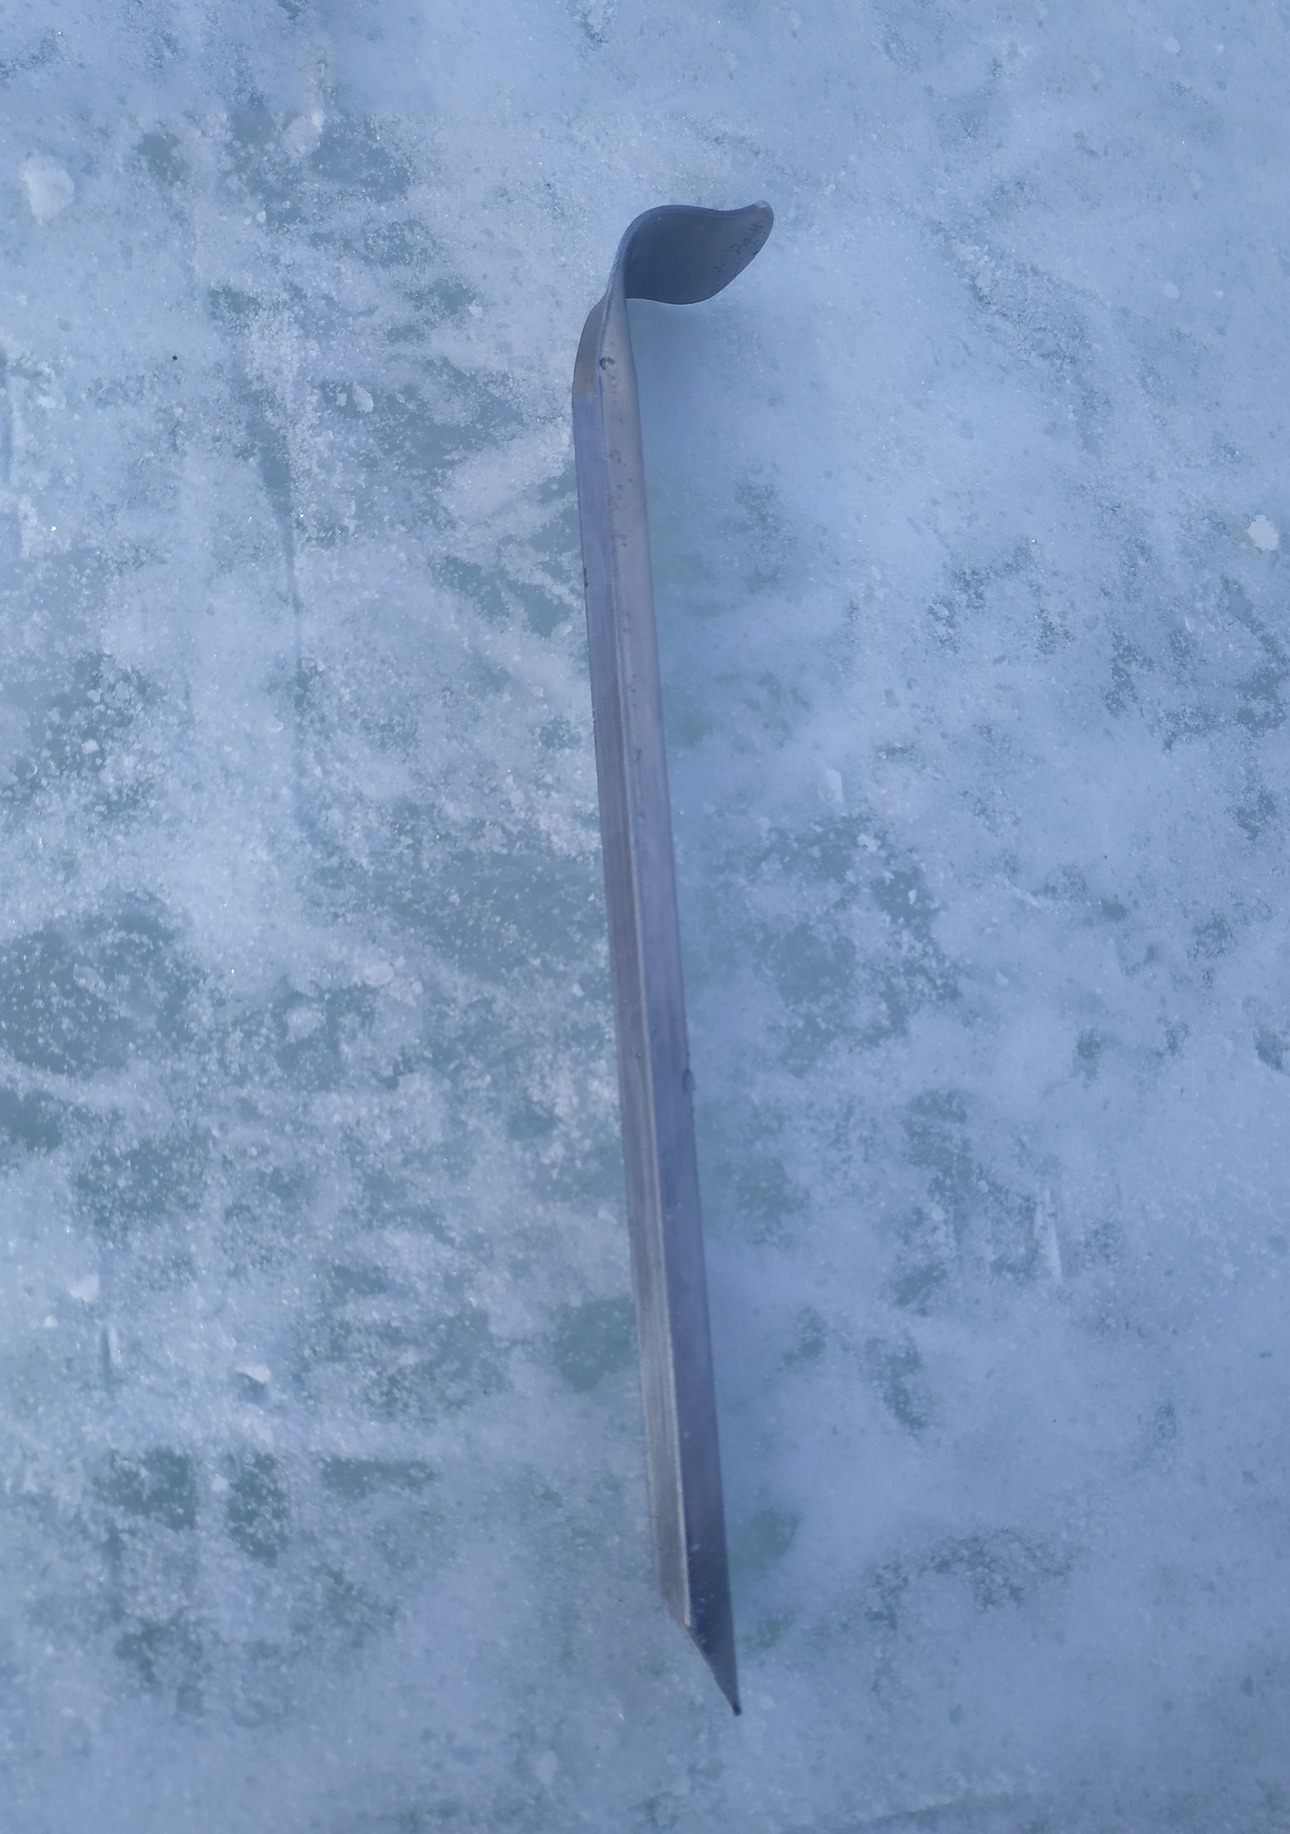 Изображение На рыхлом льду лучше использовать спасалки V-образной формы.
Фото: Владимир Тетера 